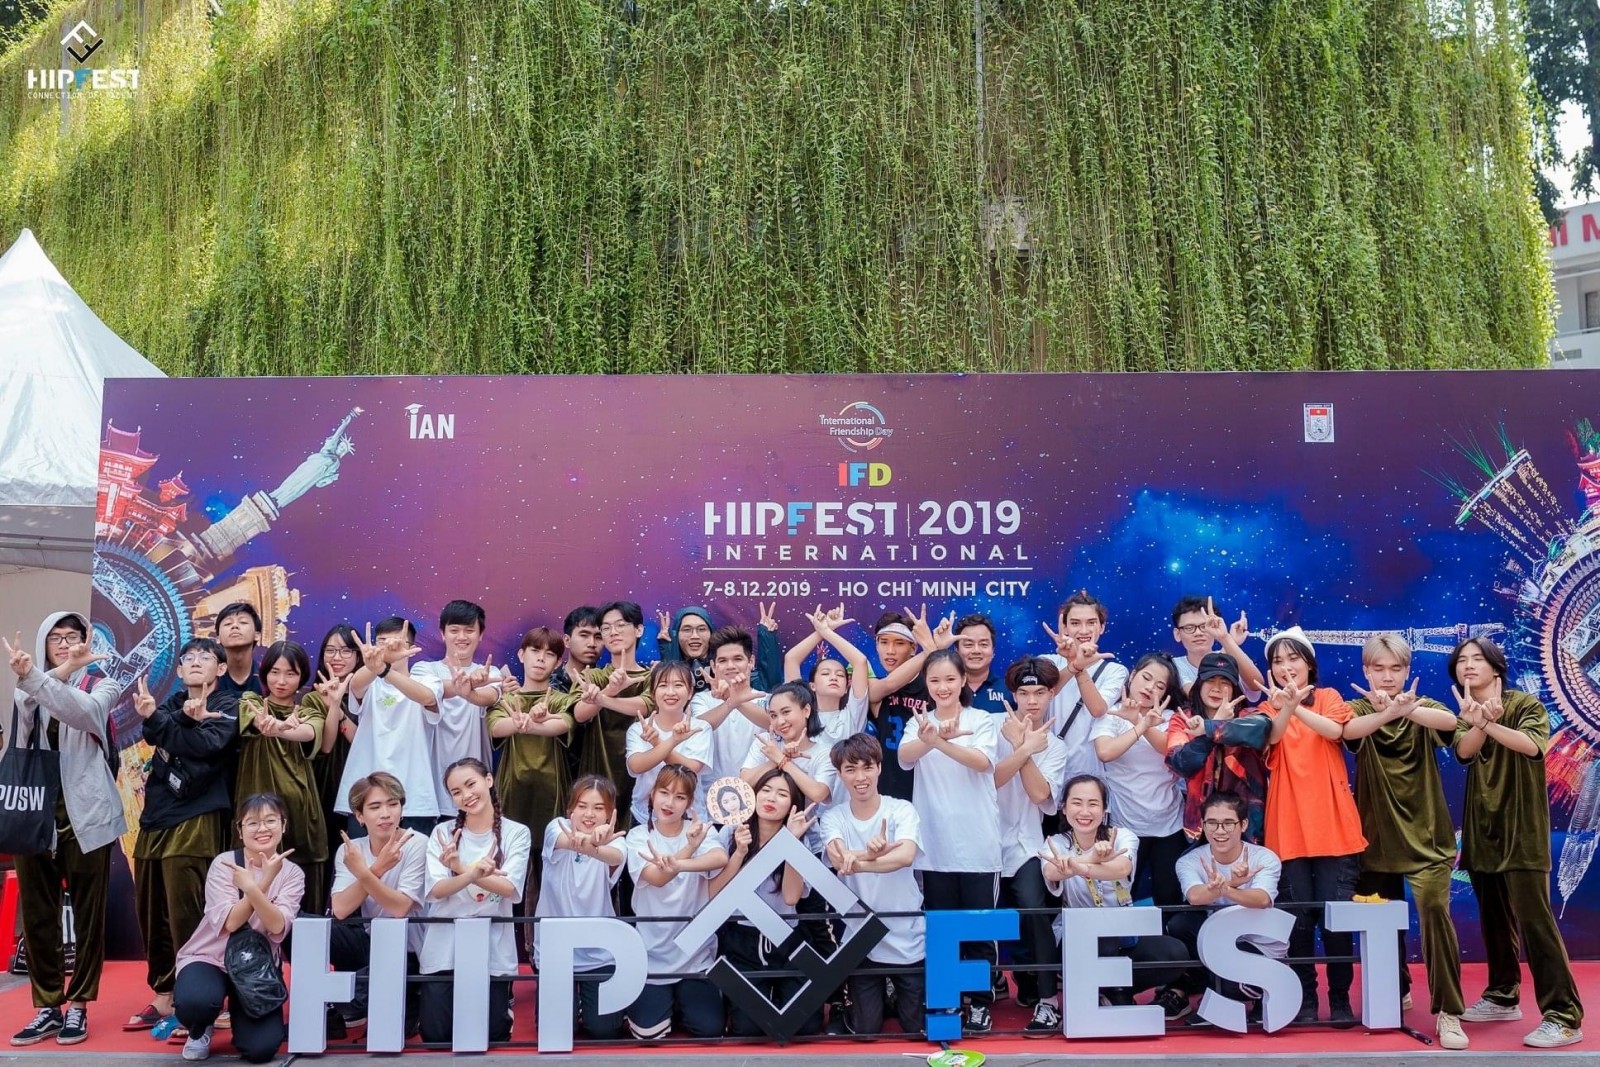 Vẫn có HipFest 2020, giải đấu 6 năm tuổi, quy mô toàn cầu "Made in Viet Nam"